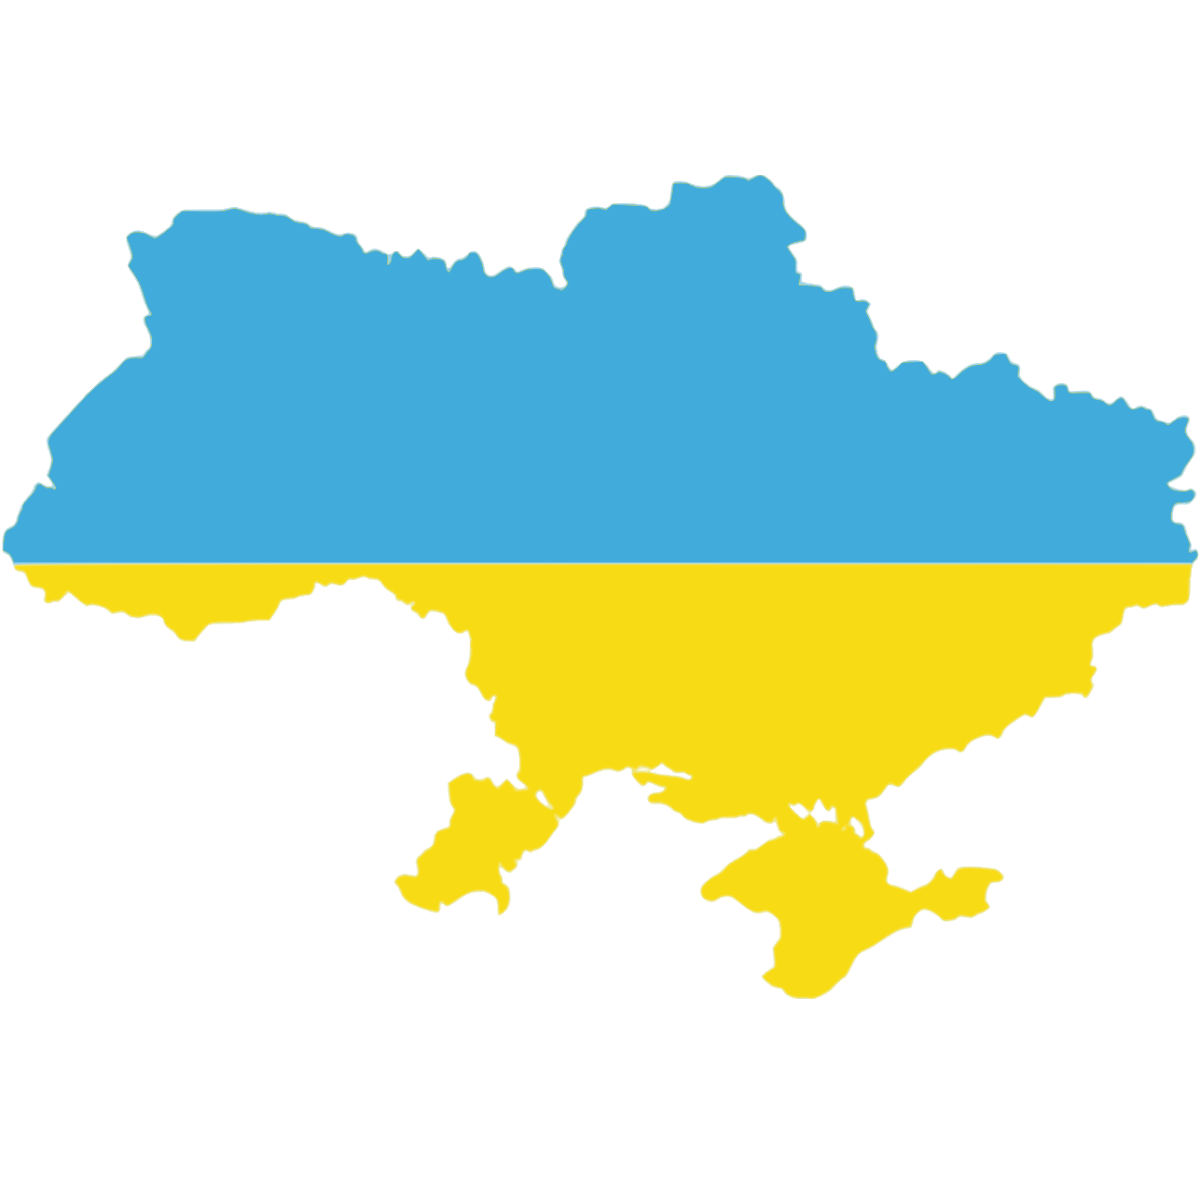 Экономическая И Социальная География Украины 9 Класс Украина